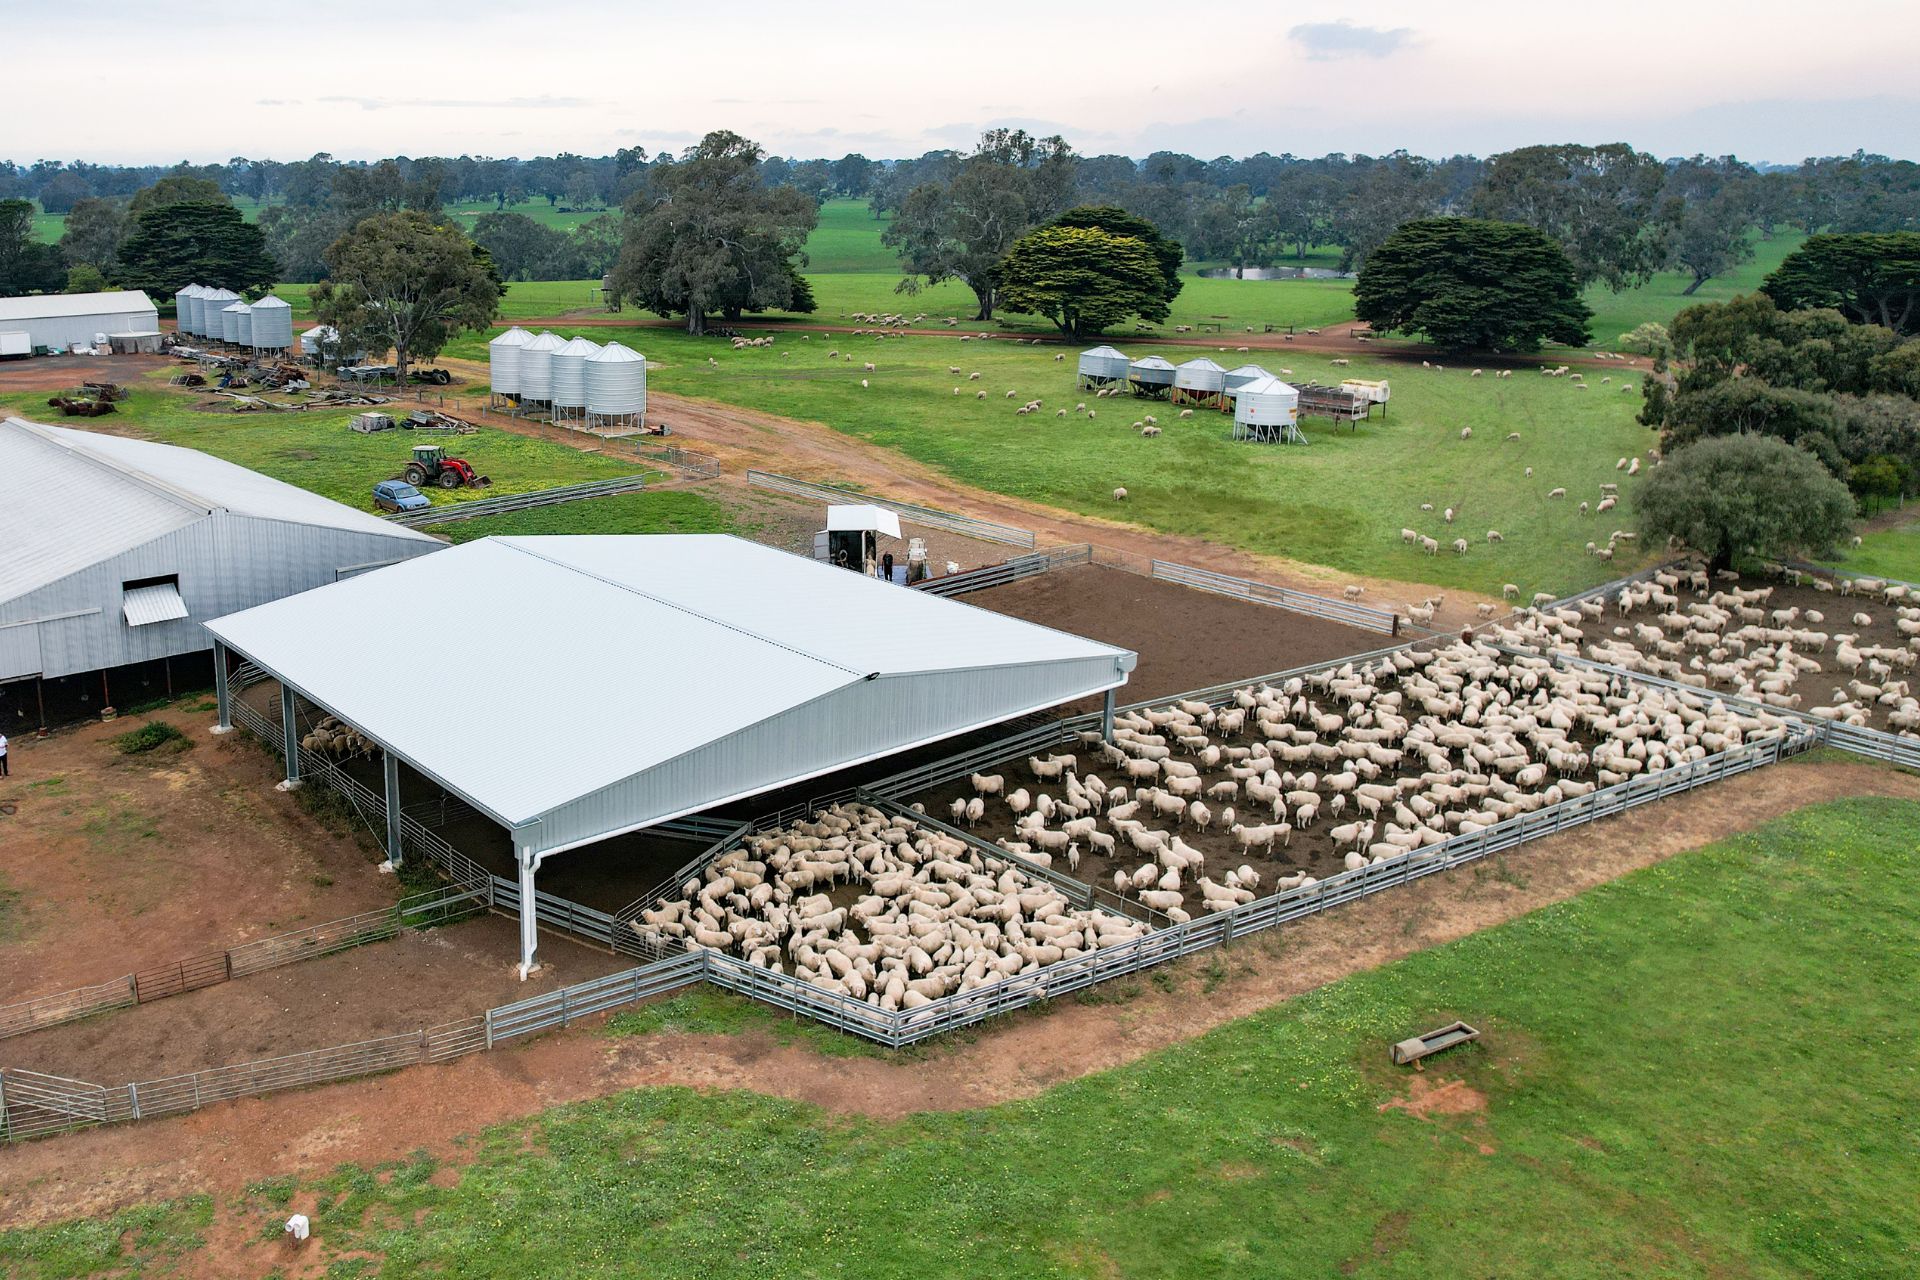 A 22.6m x 24m x 3.5m sheep yard cover at Culla VIC